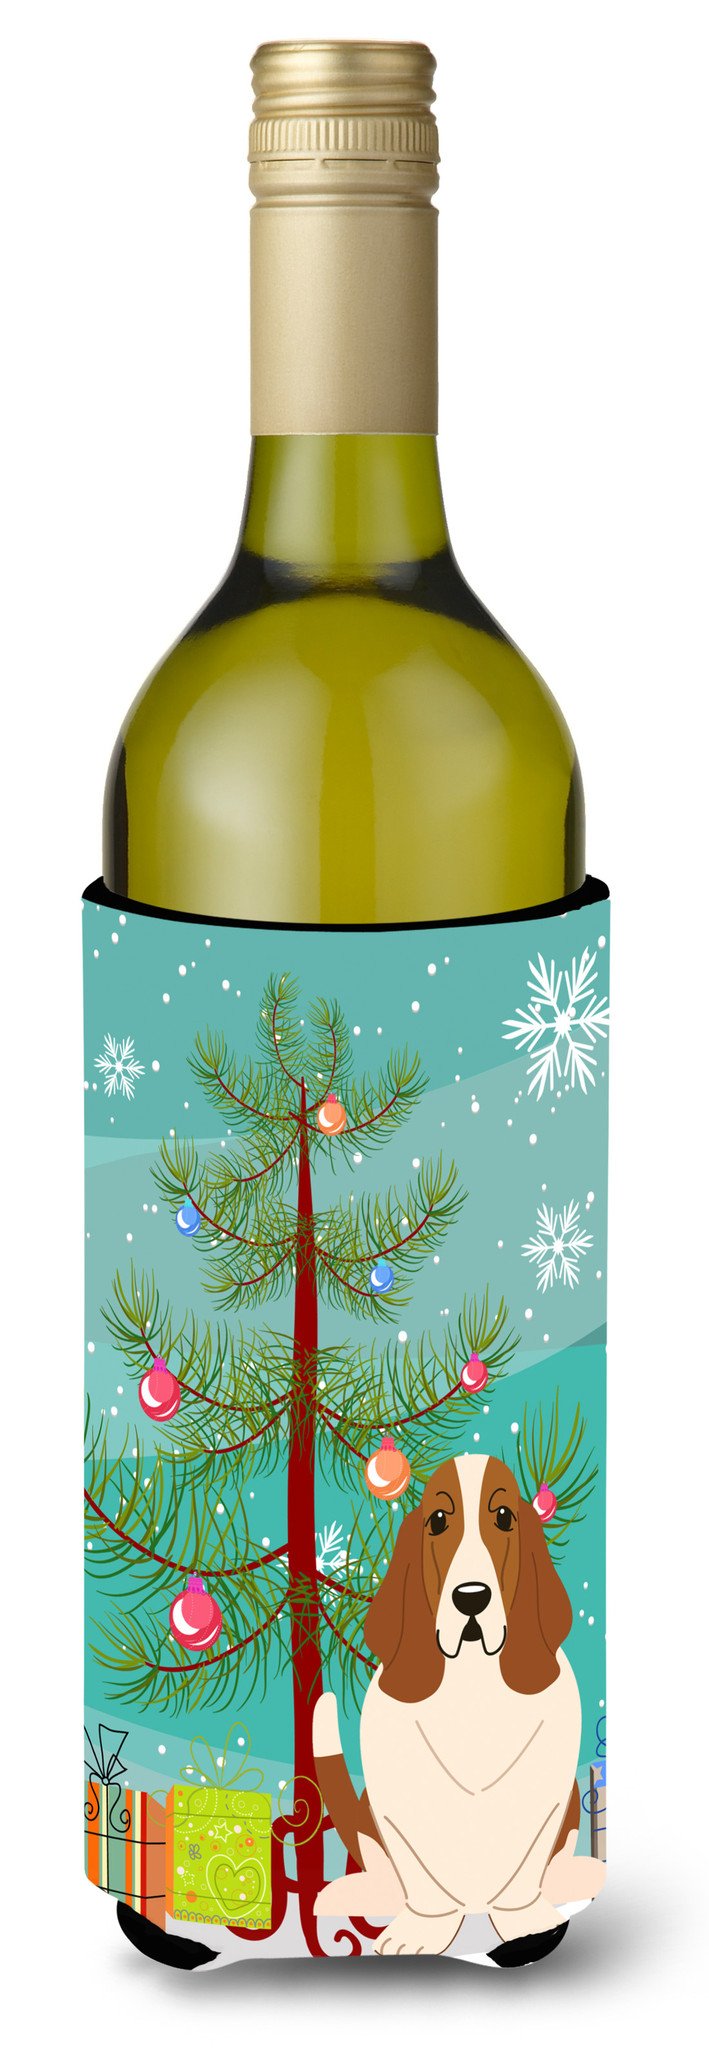 Merry Christmas Tree Basset Hound Wine Bottle Beverge Insulator Hugger BB4146LITERK by Caroline's Treasures